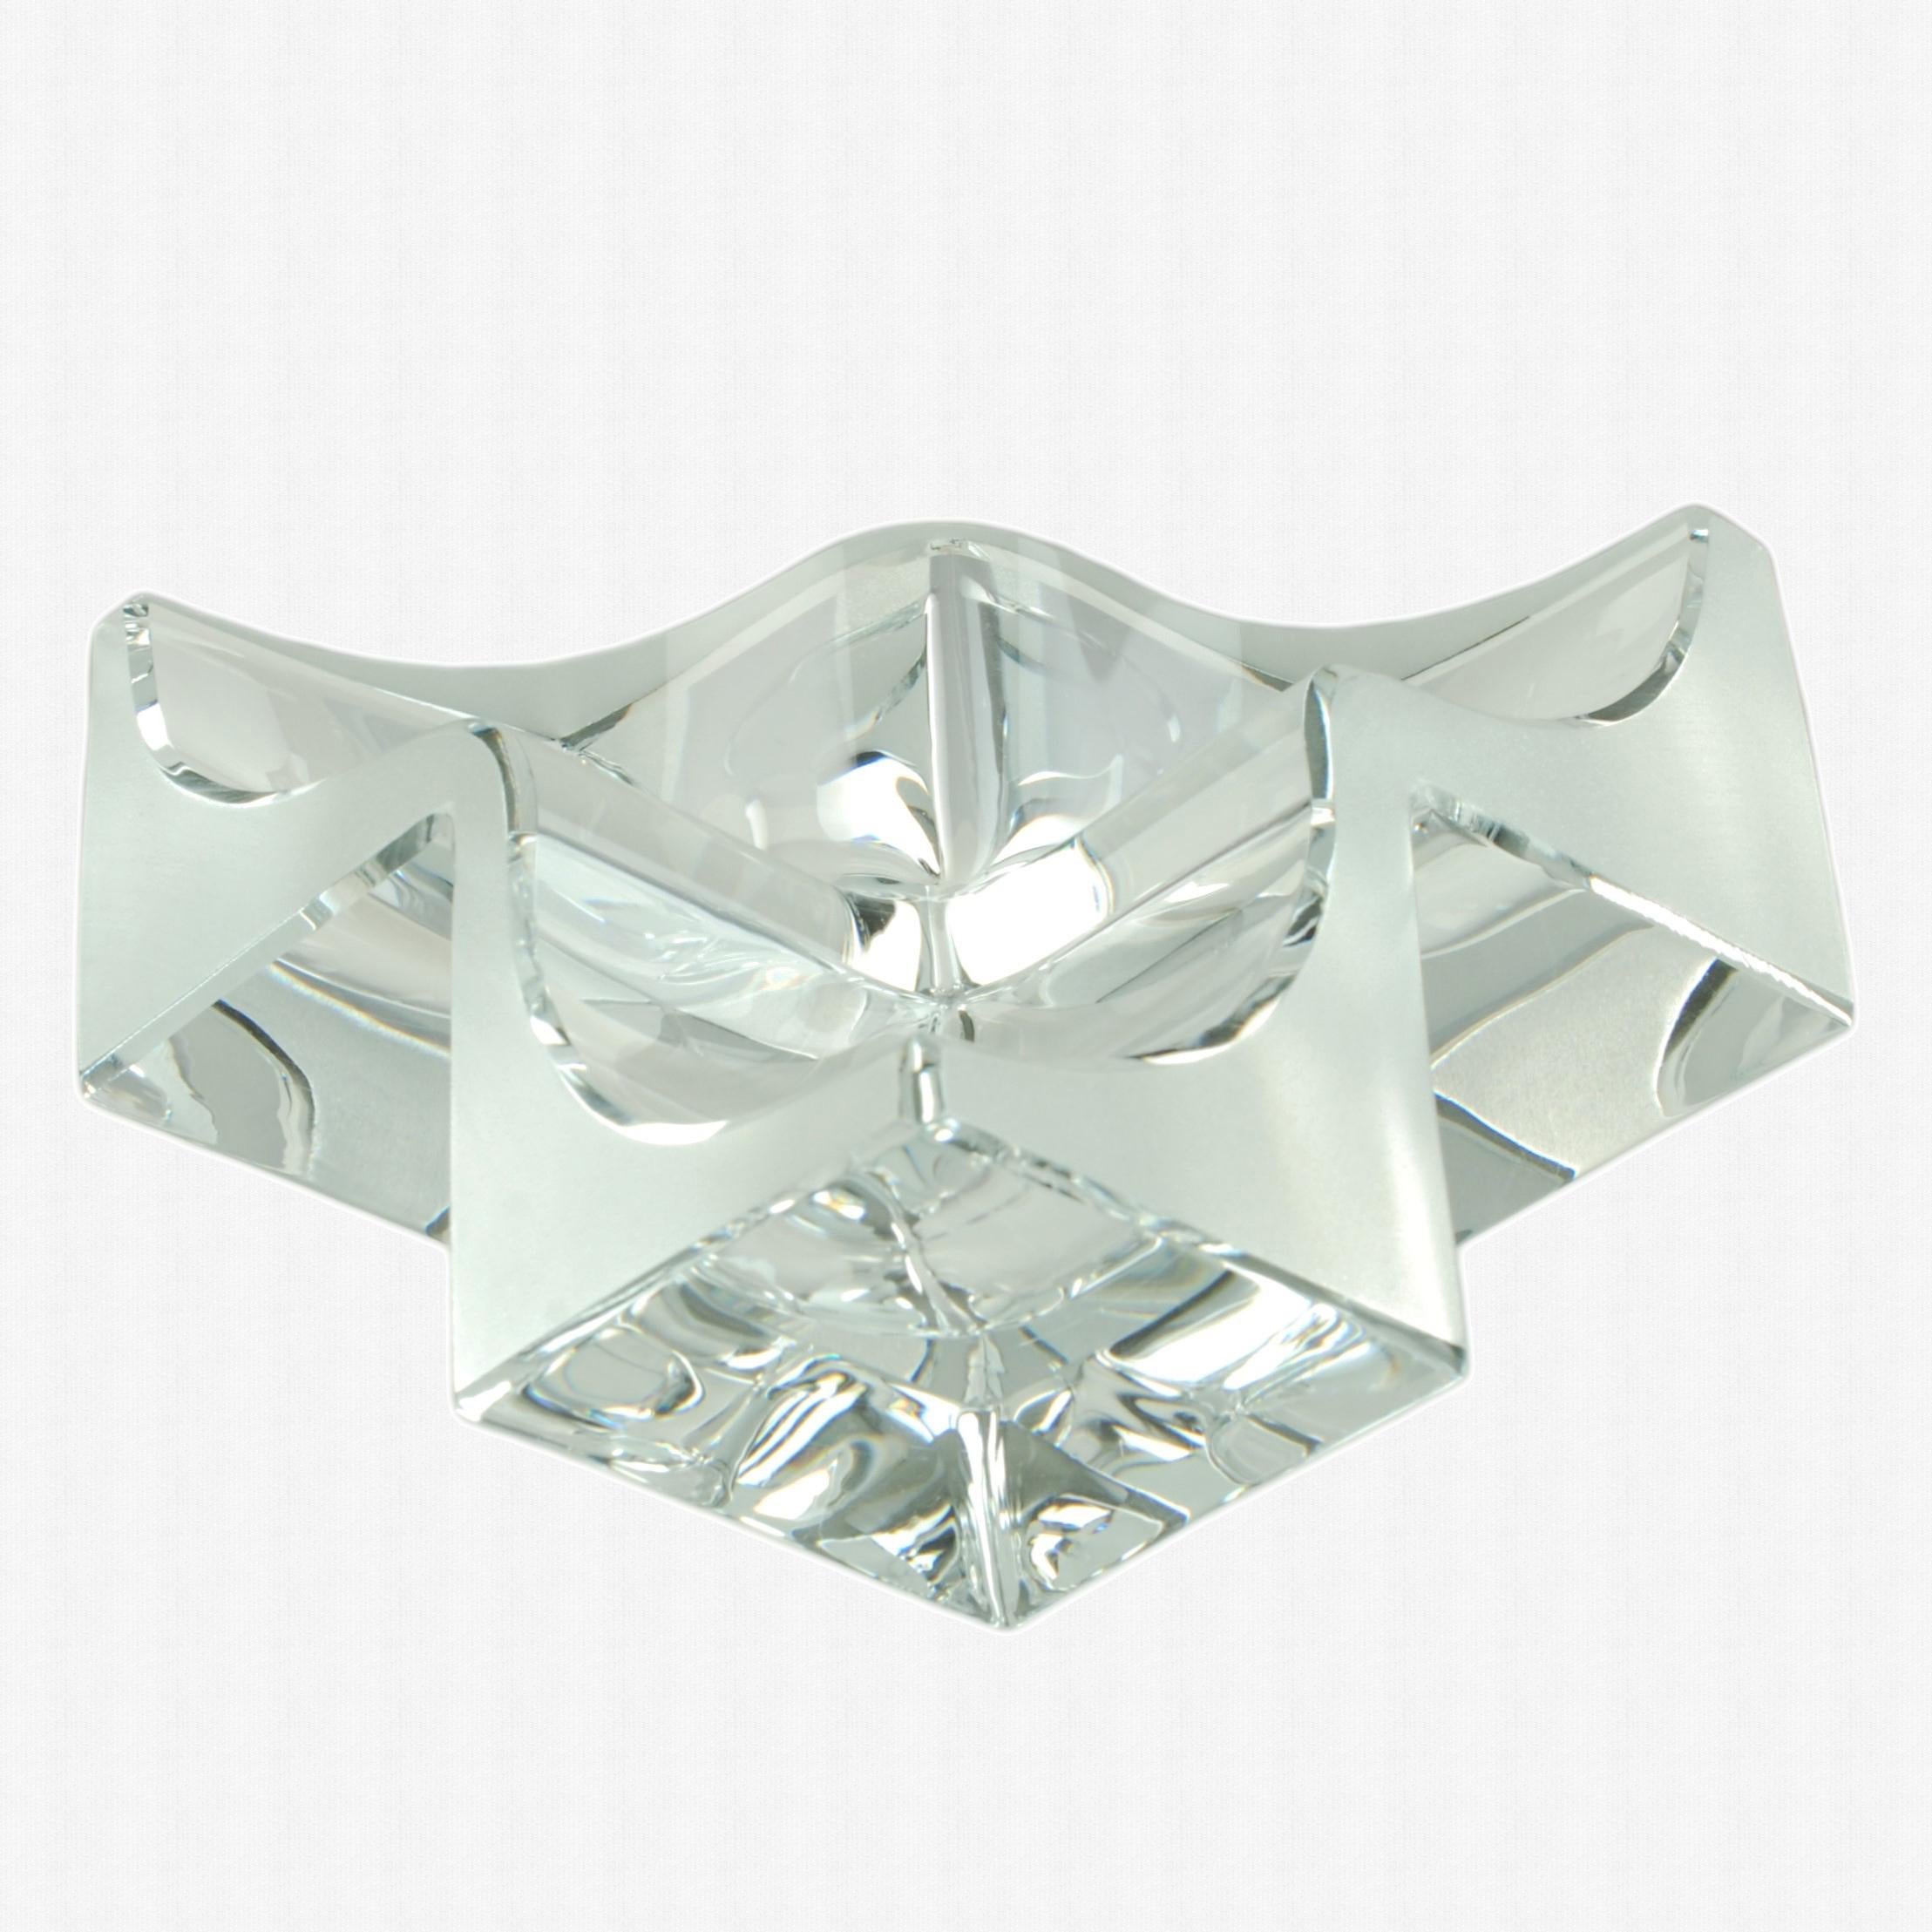 Ce vide poche sculptural en cristal français a été réalisé par Daum et présente une forme angulaire exécutée en cristal clair et dépoli. La pièce est composée de trois éléments cubiques, dont l'intérieur a été évidé pour former des sections lisses